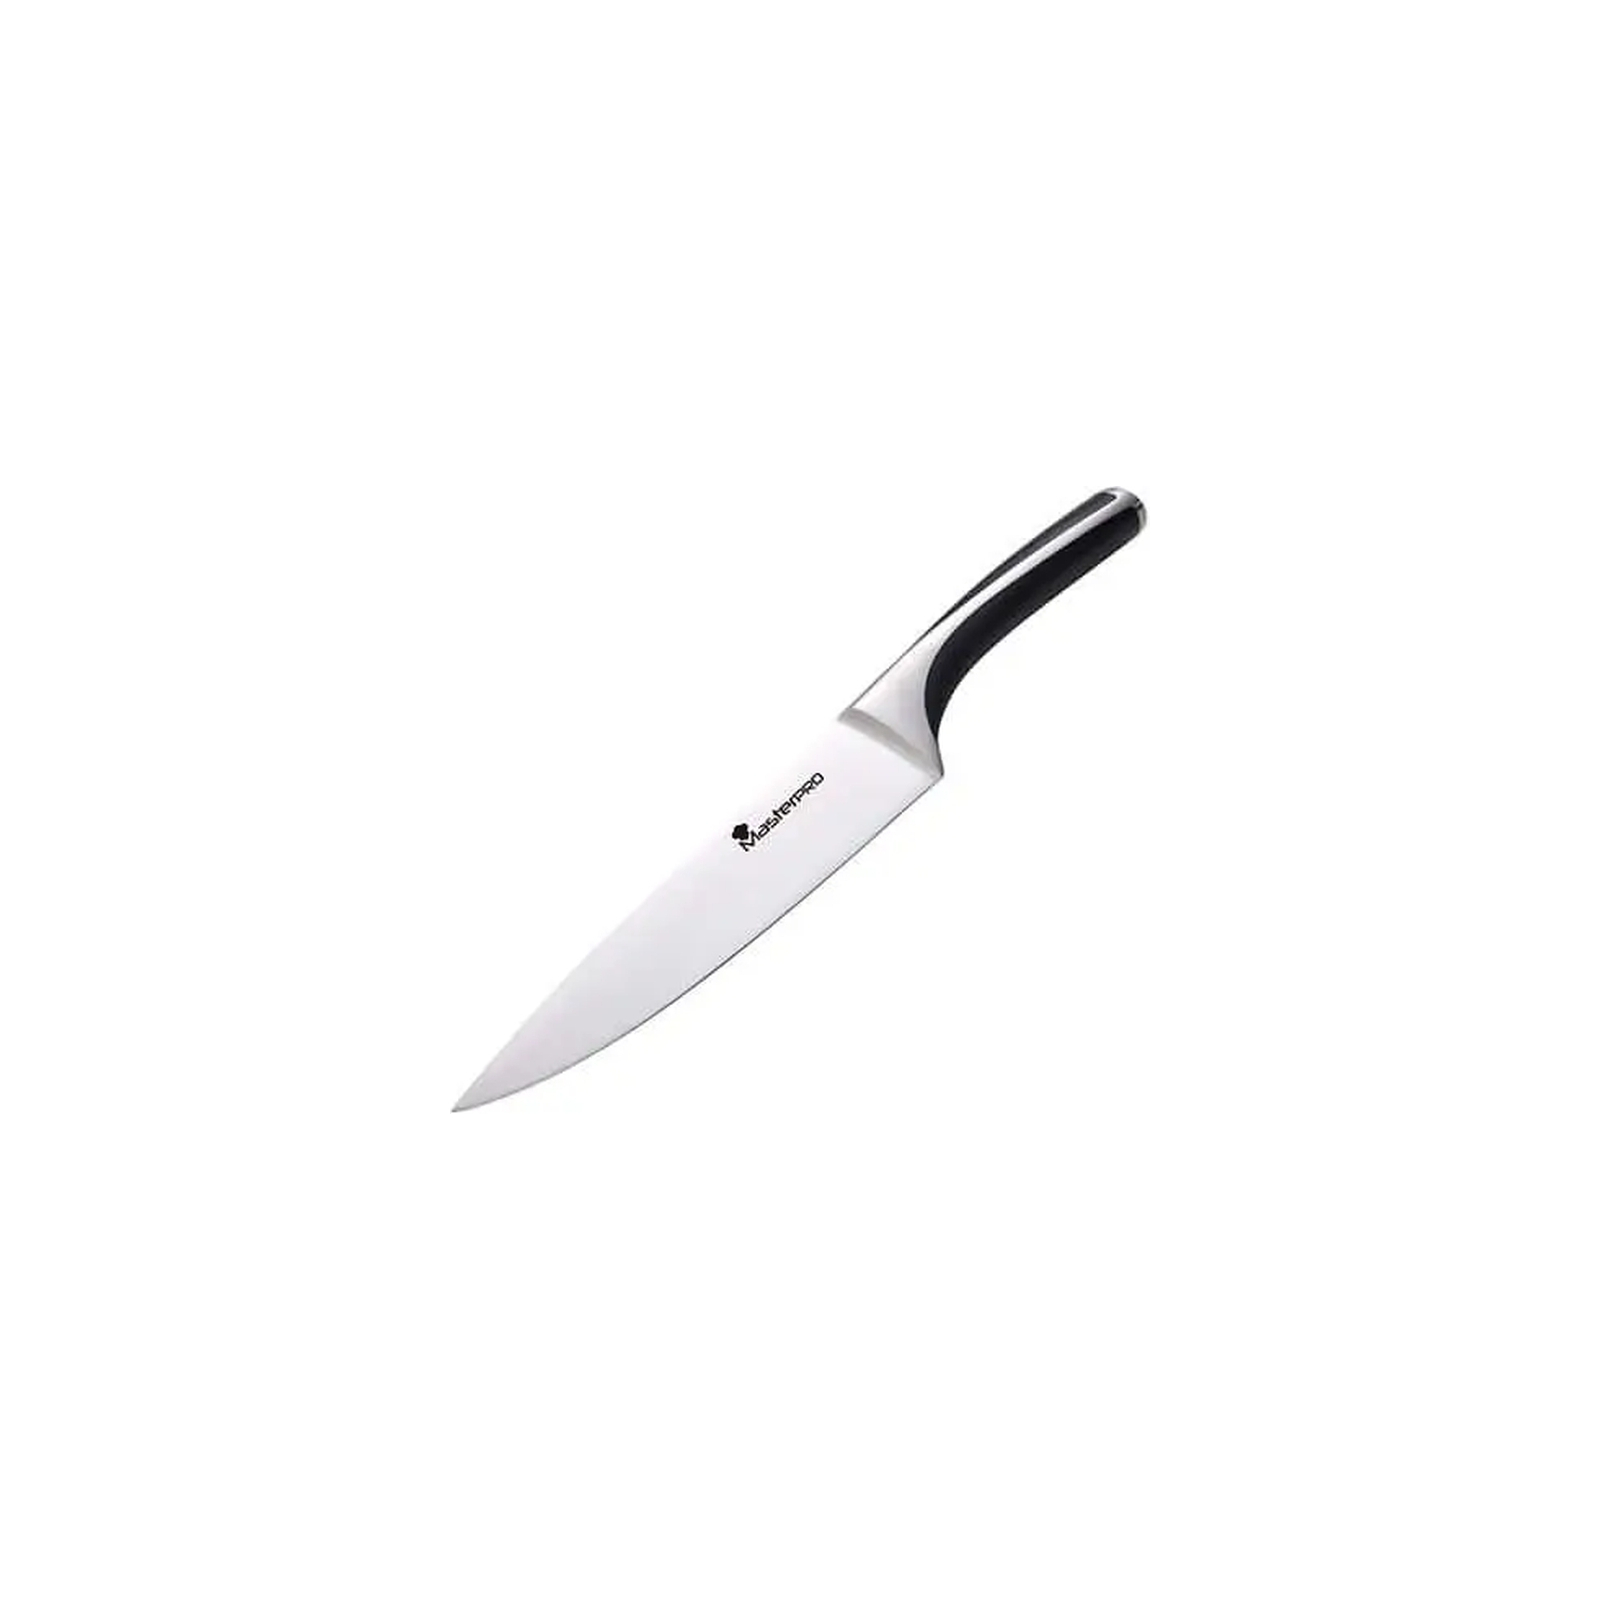 Кухонный нож MasterPro Elegance для хліба 20 см (BGMP-4433)